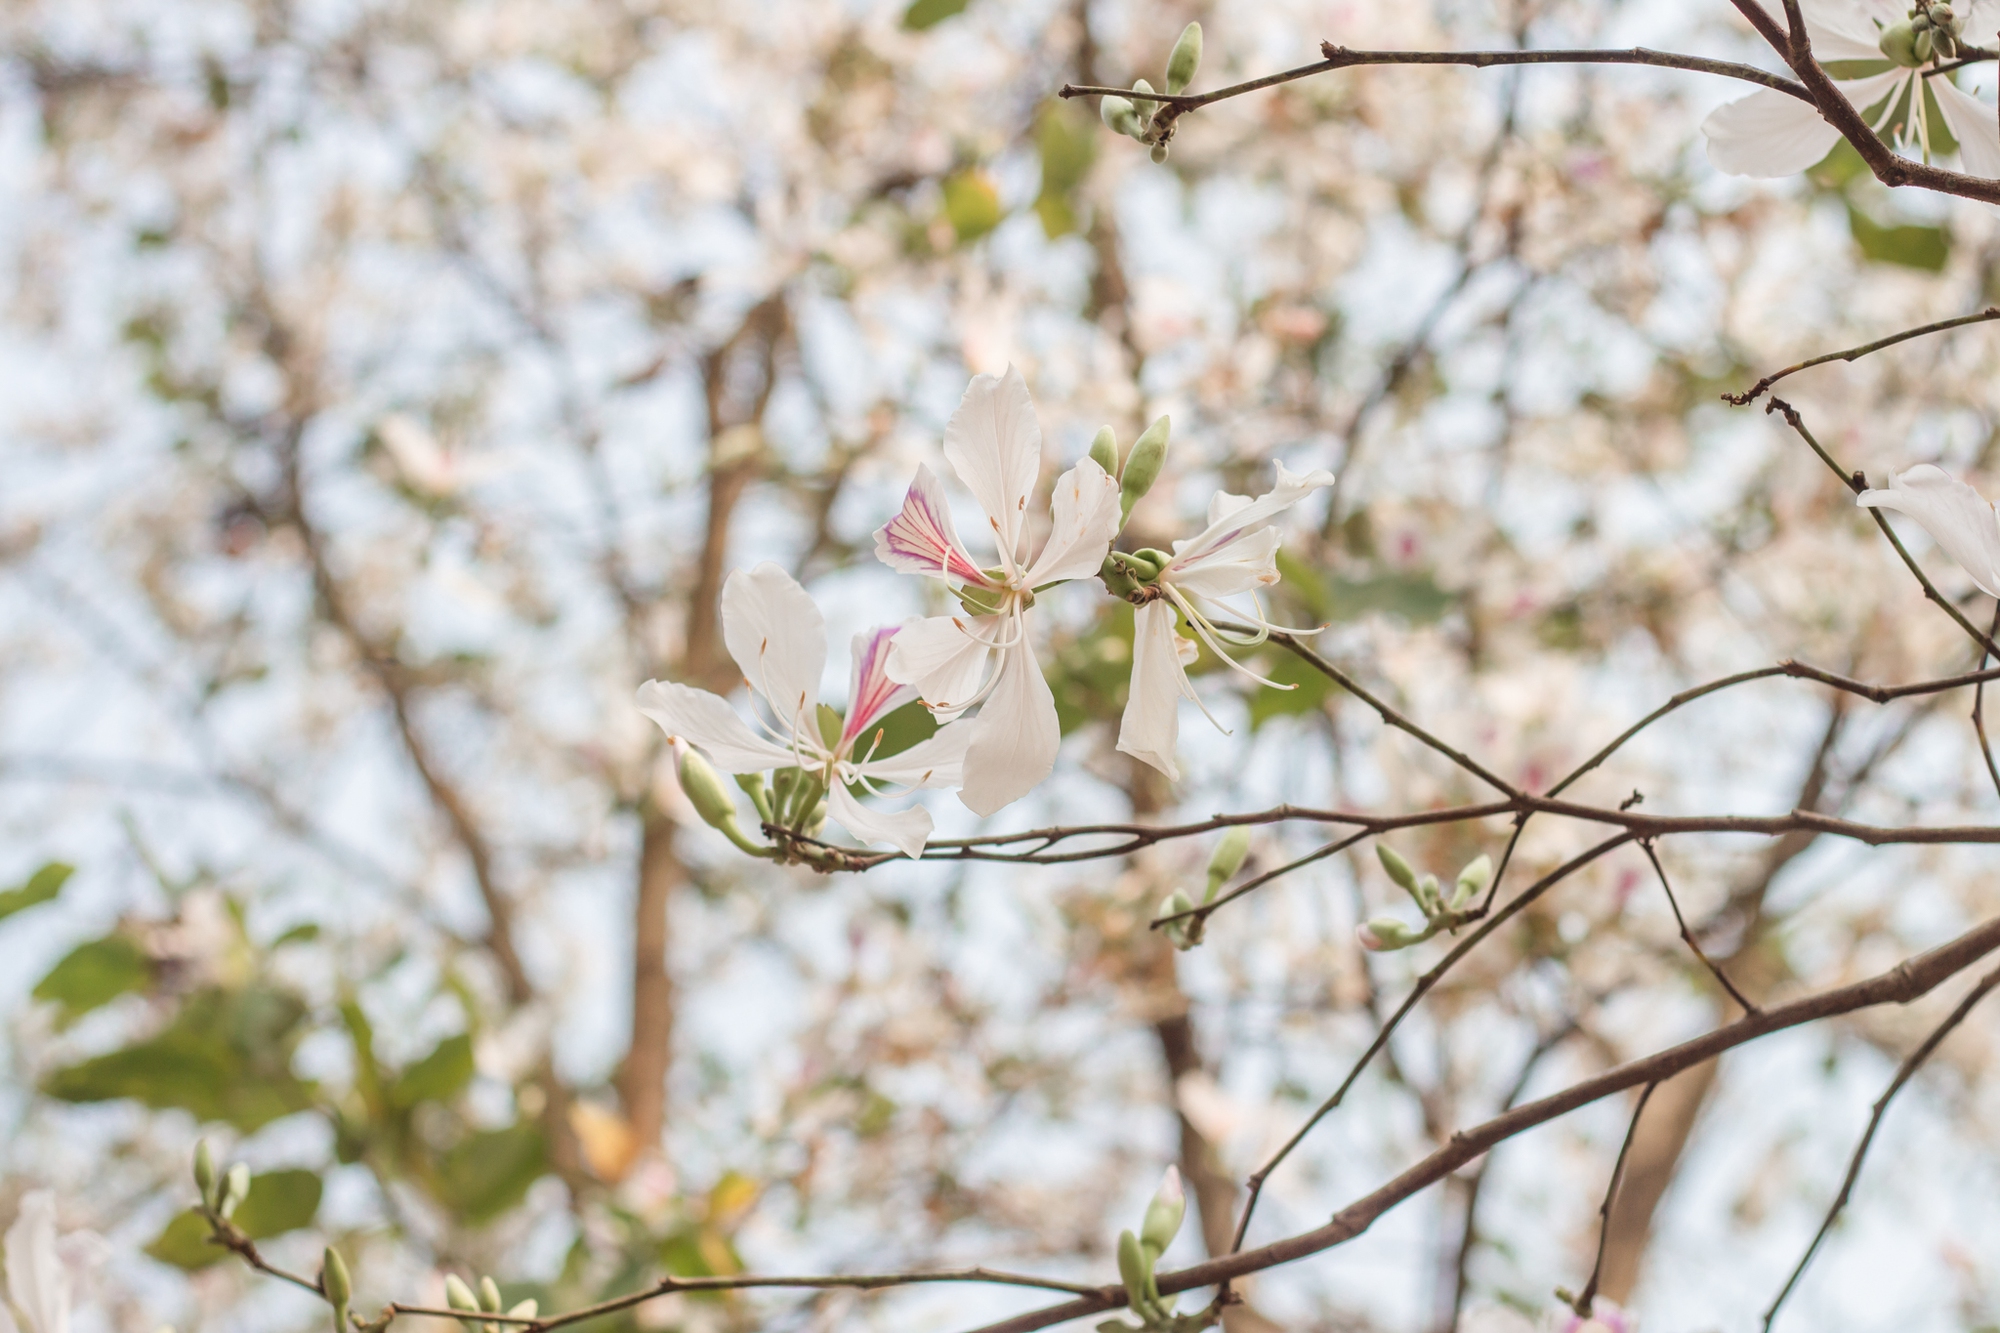 Ngất ngây trước vẻ đẹp Điện Biên mùa hoa ban nở lung linh nhất trong năm - ảnh 8